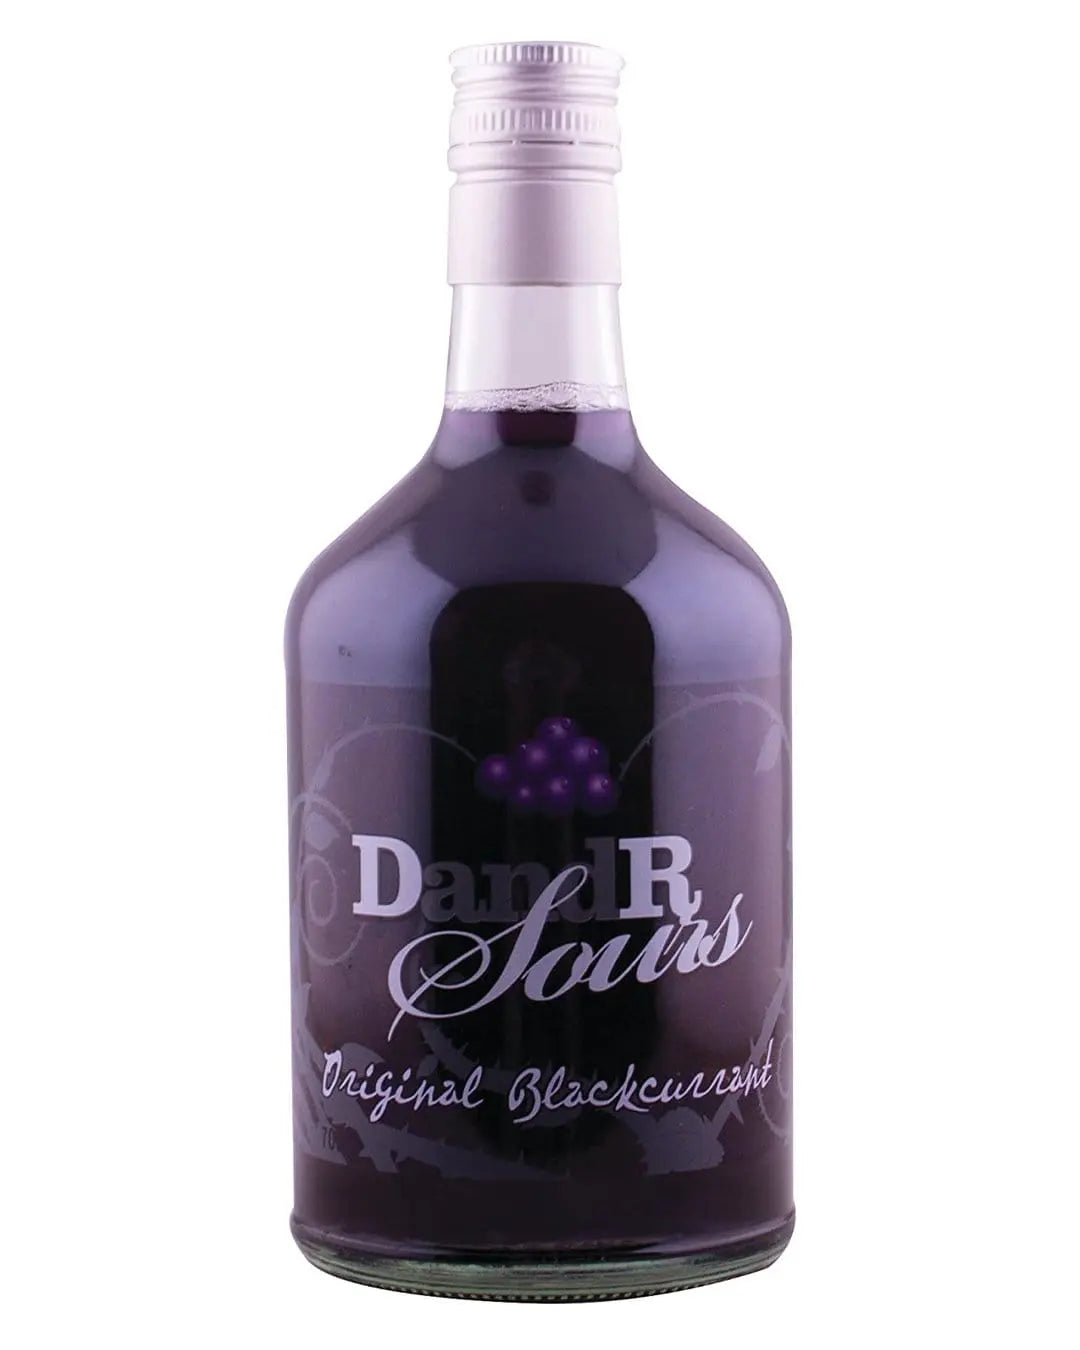 DandR Sours Blackcurrant, 70 cl Liqueurs & Other Spirits